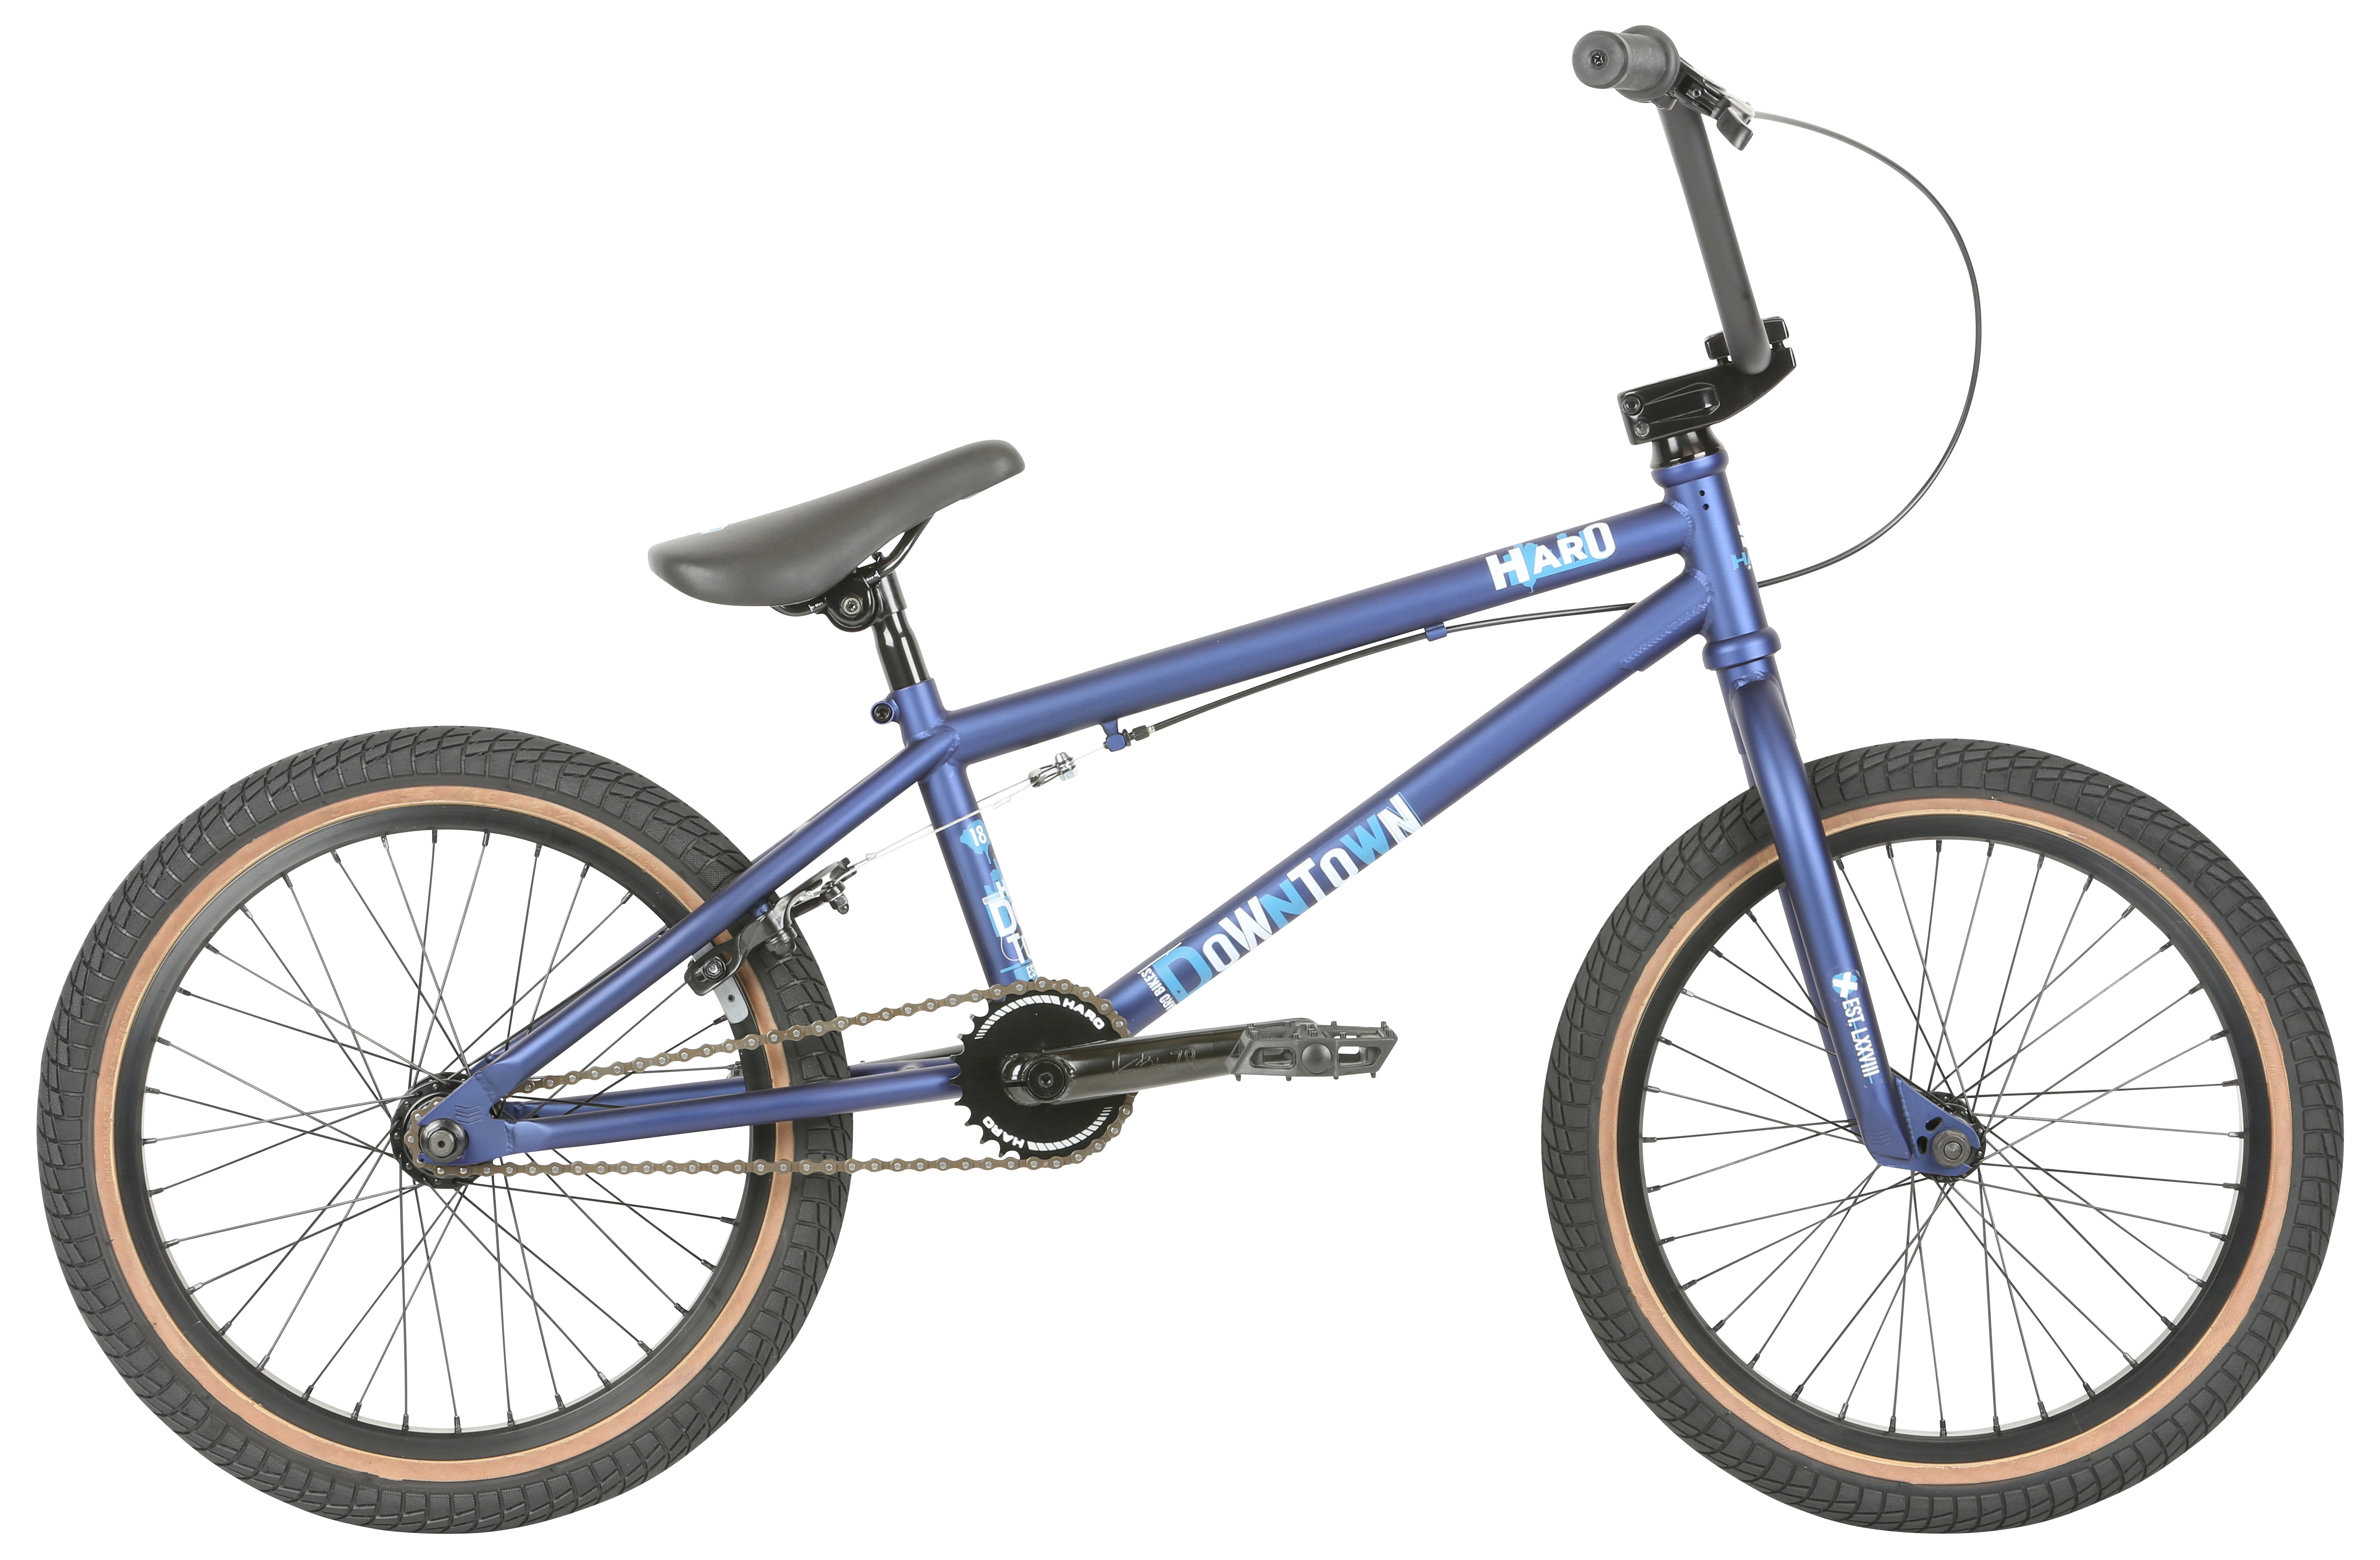  Отзывы о Велосипеде BMX Haro Downtown 18 2019